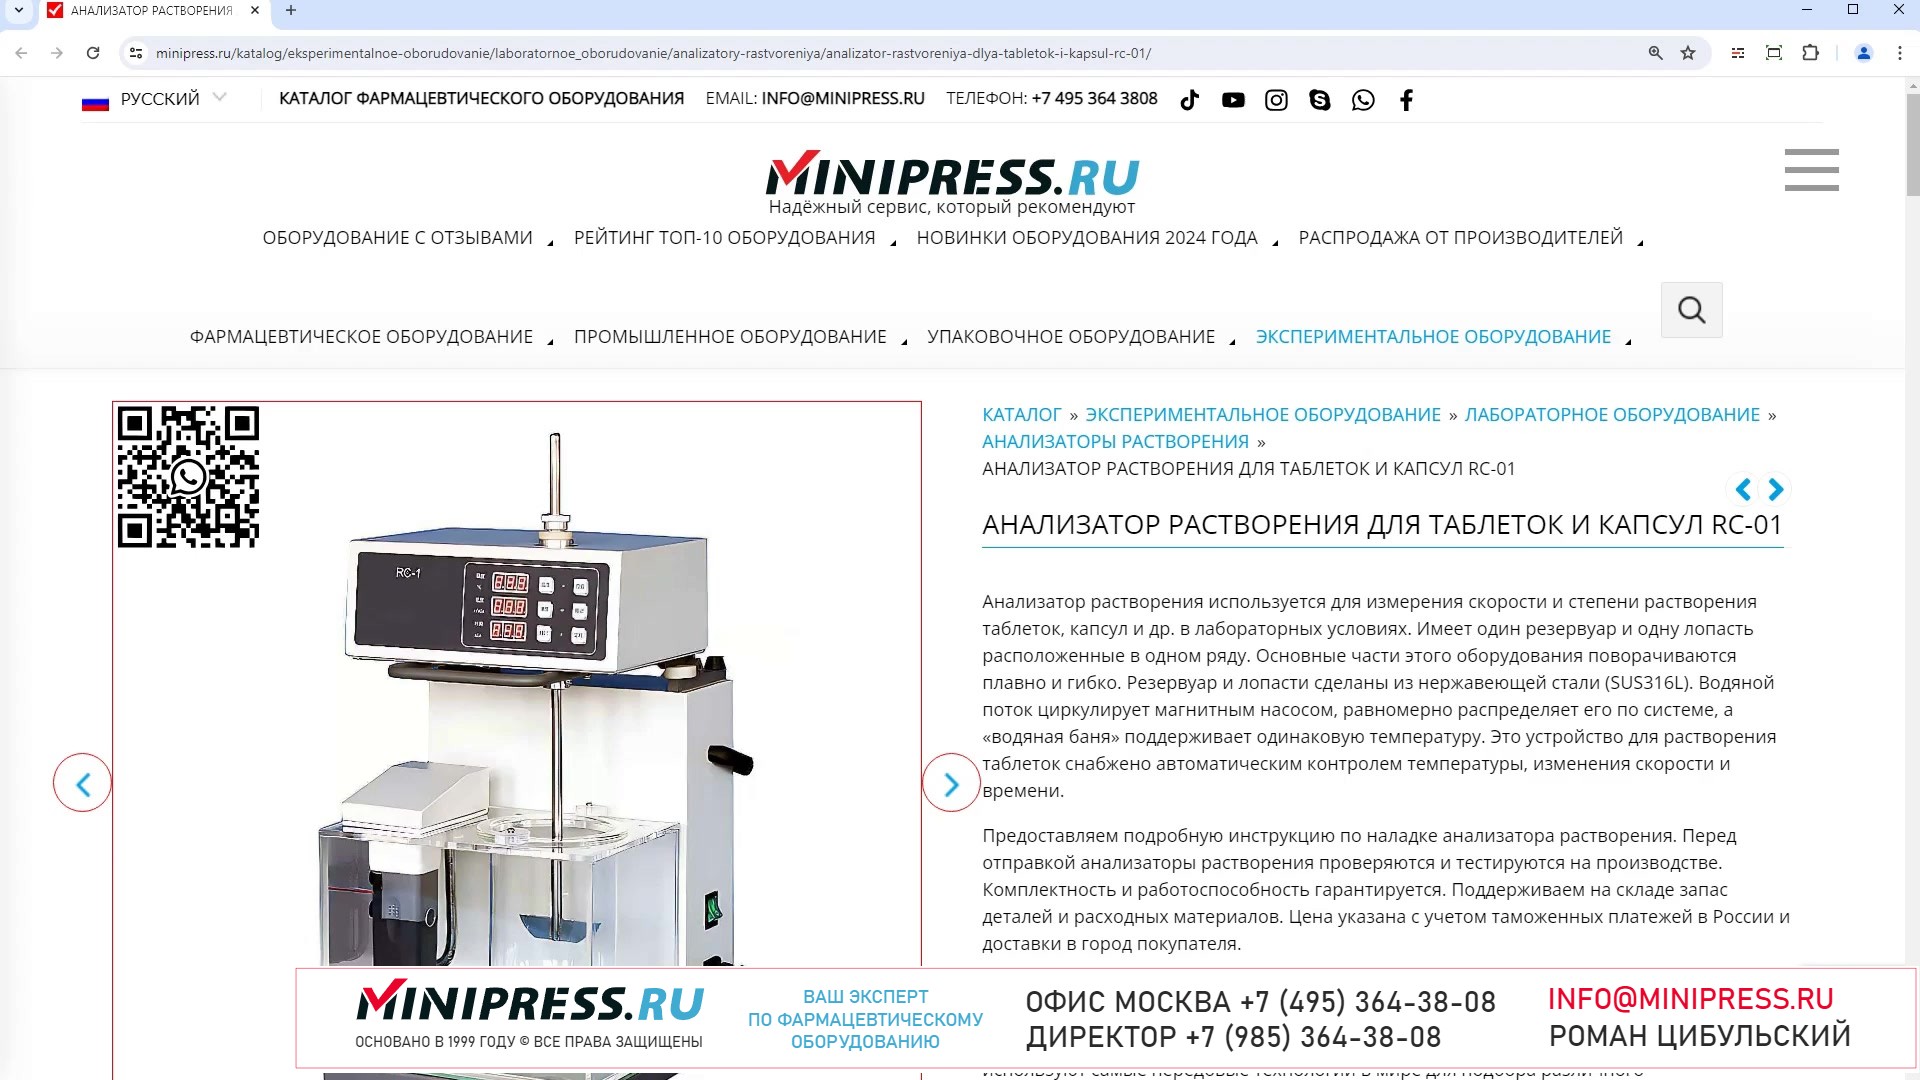 Minipress.ru Анализатор растворения для таблеток и капсул RC-01